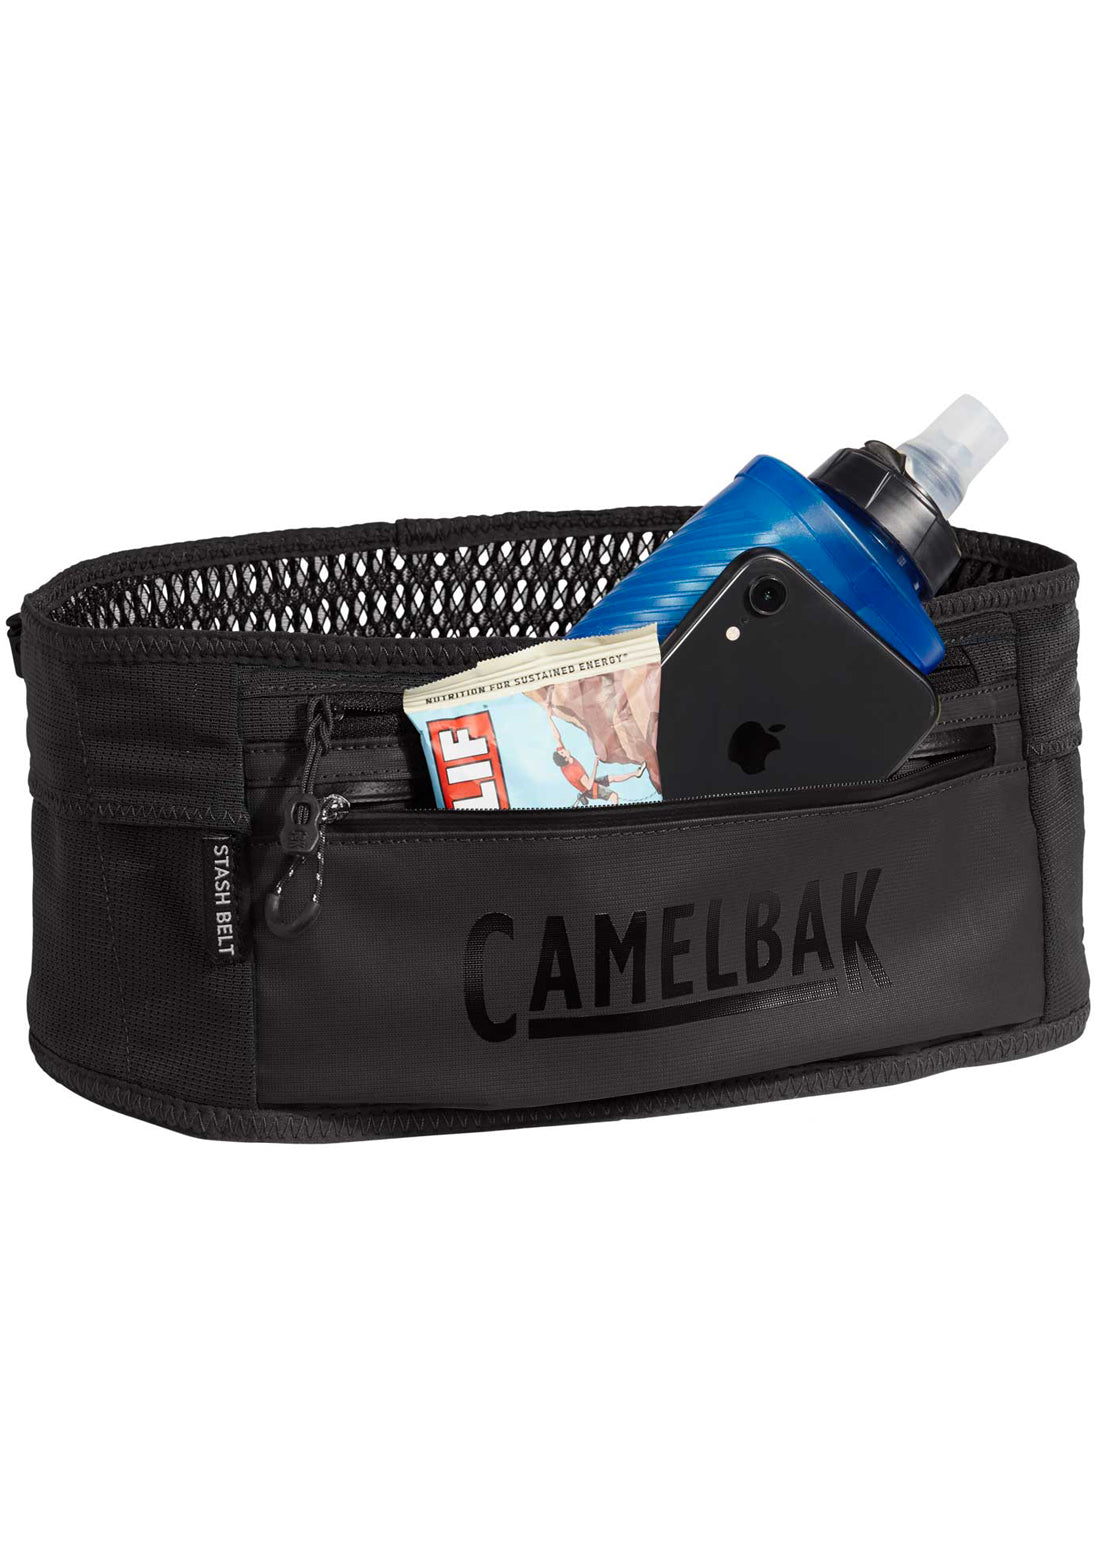 Camelbak Stash Belt Hydration Pack Black